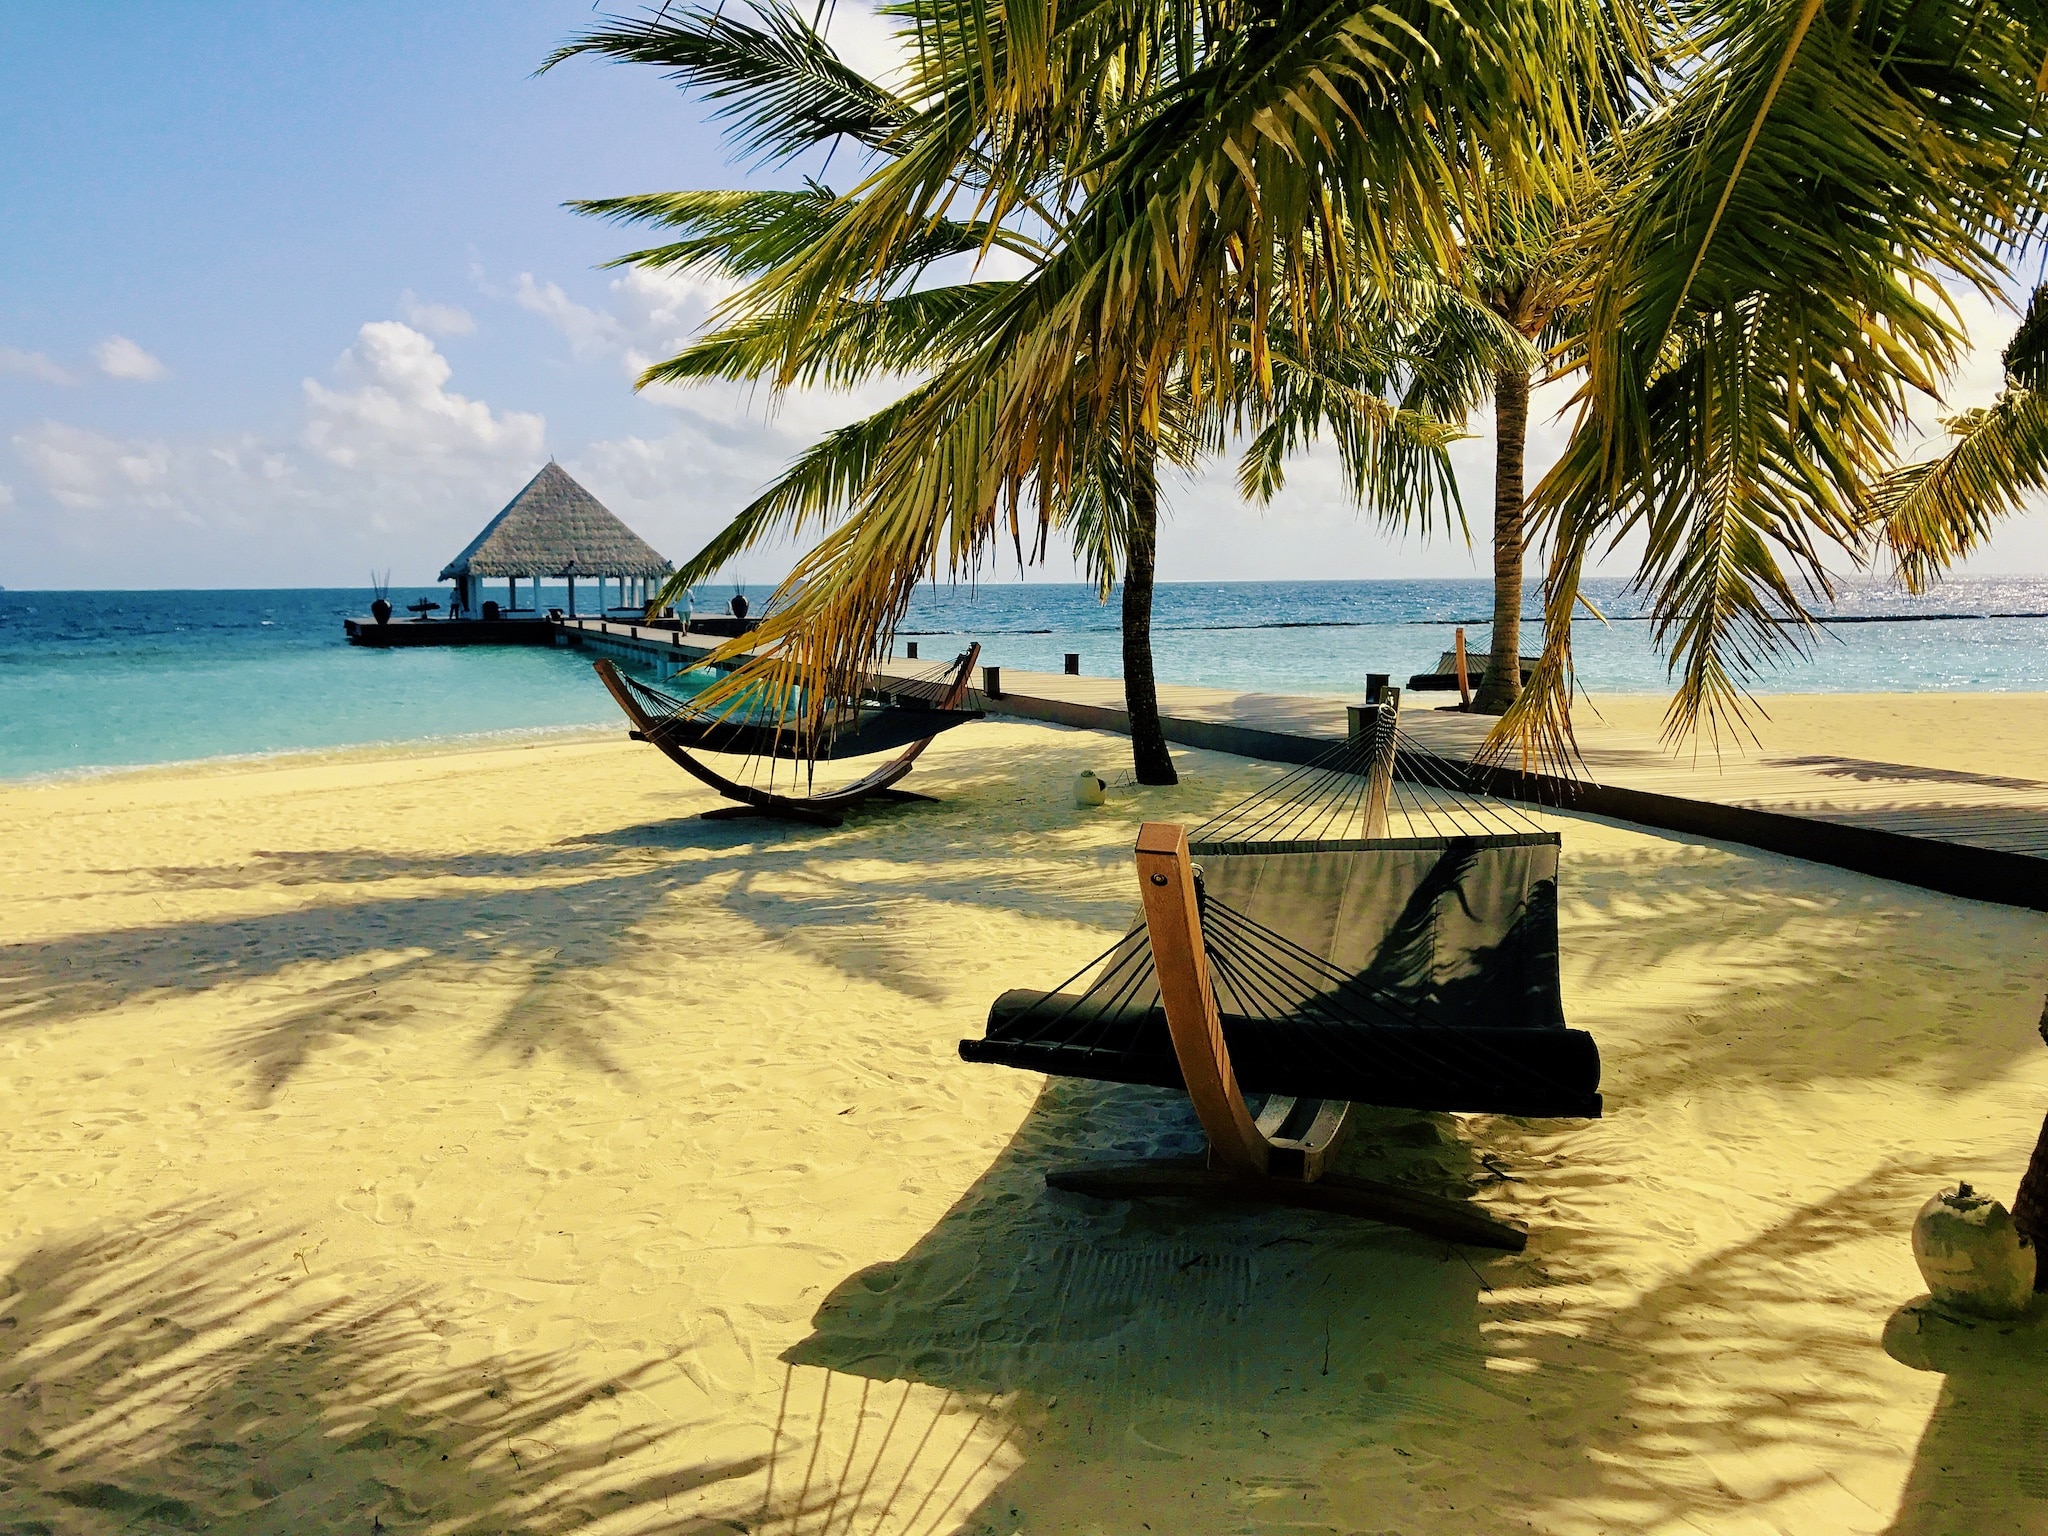 Malediven-Urlaub günstig buchen: Tipps & Erfahrungen – ab ins Inselparadies?